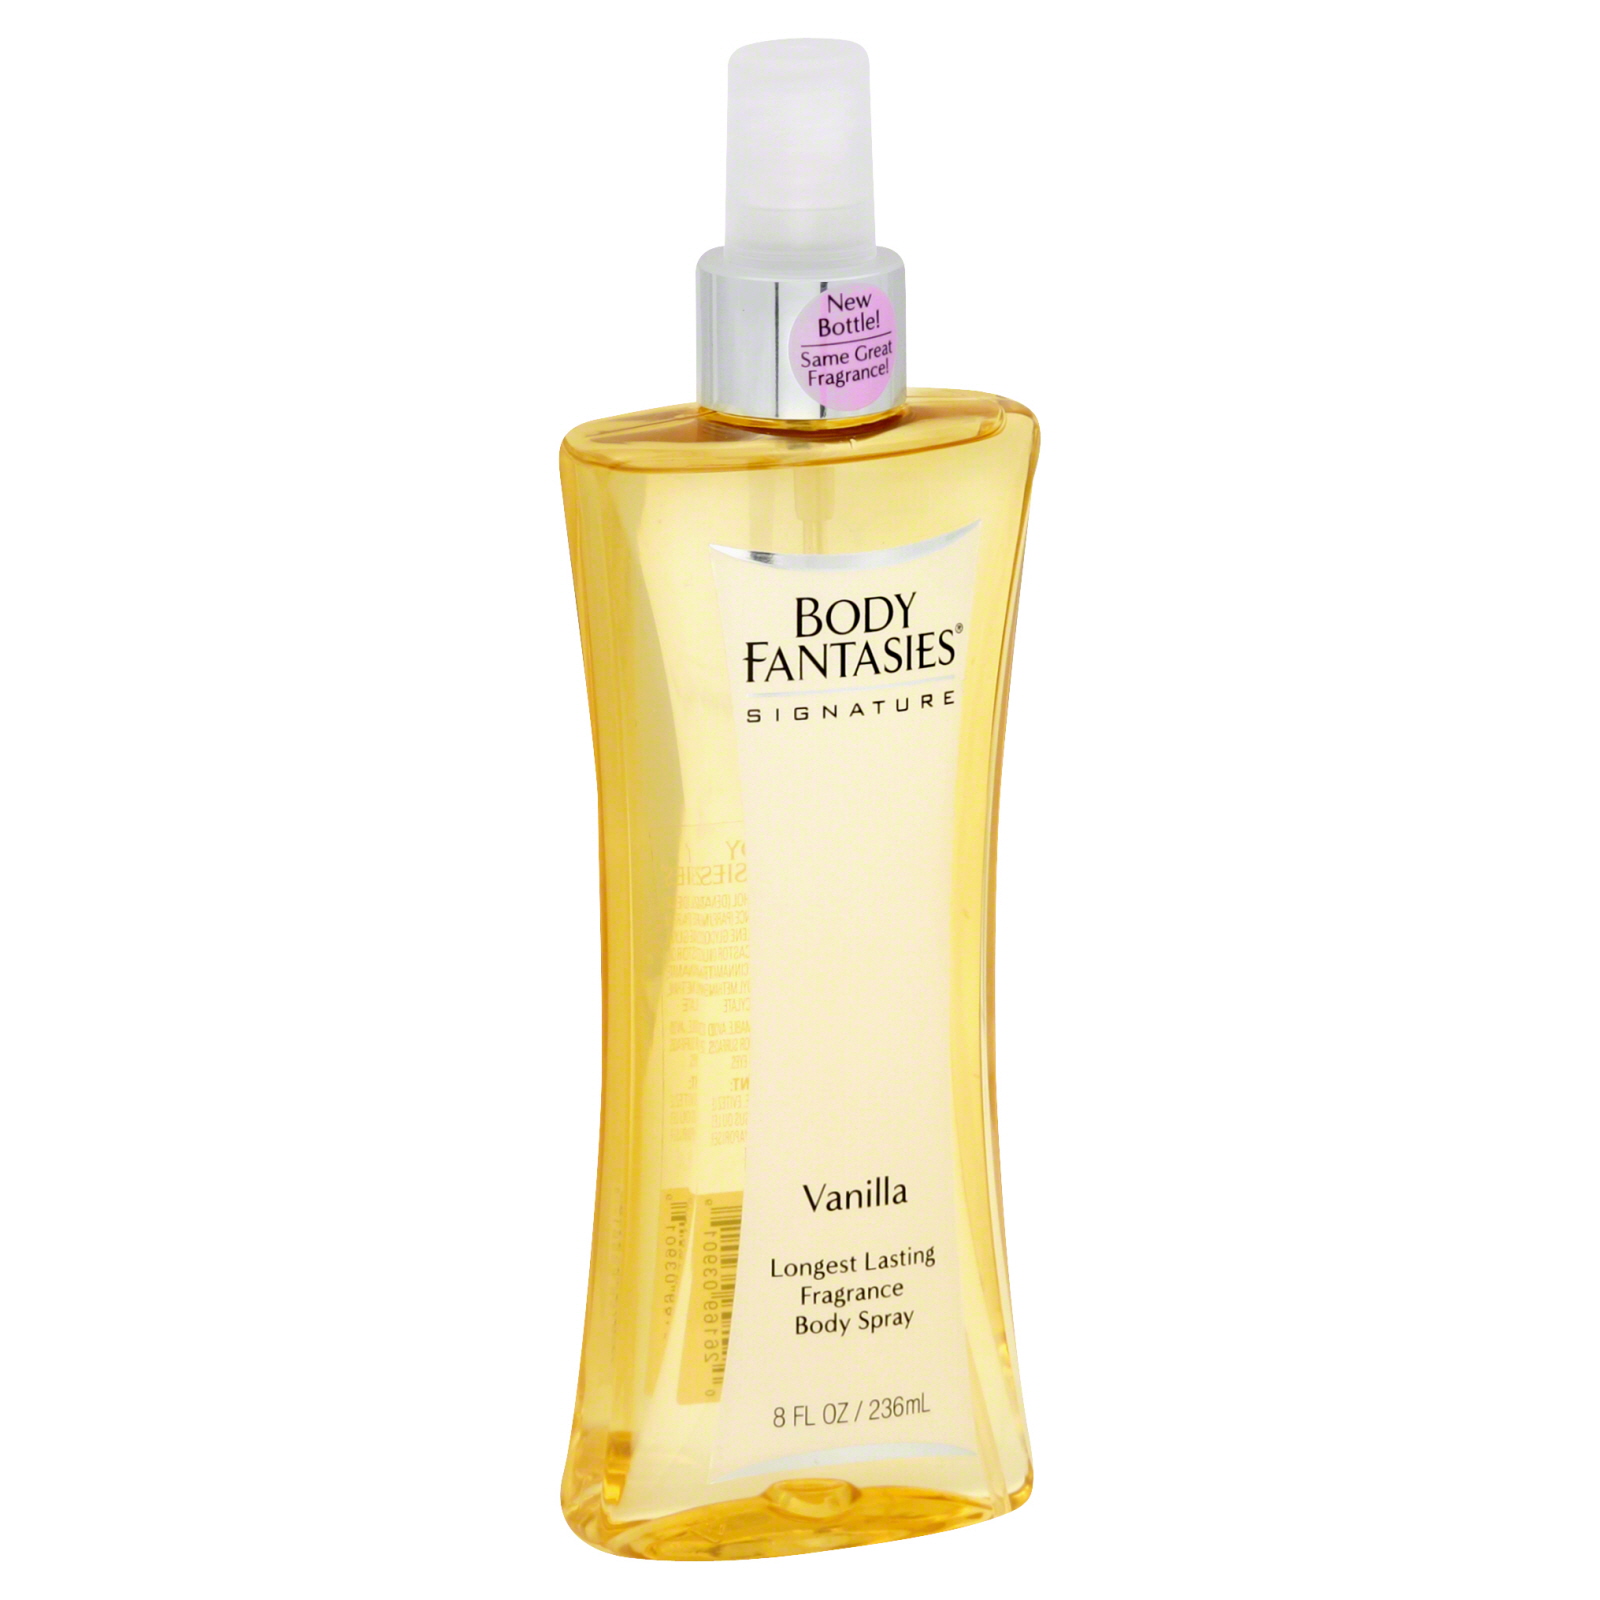 Body Fantasies Fragrance Body Spray, Vanilla, 8 fl oz (236 ml)